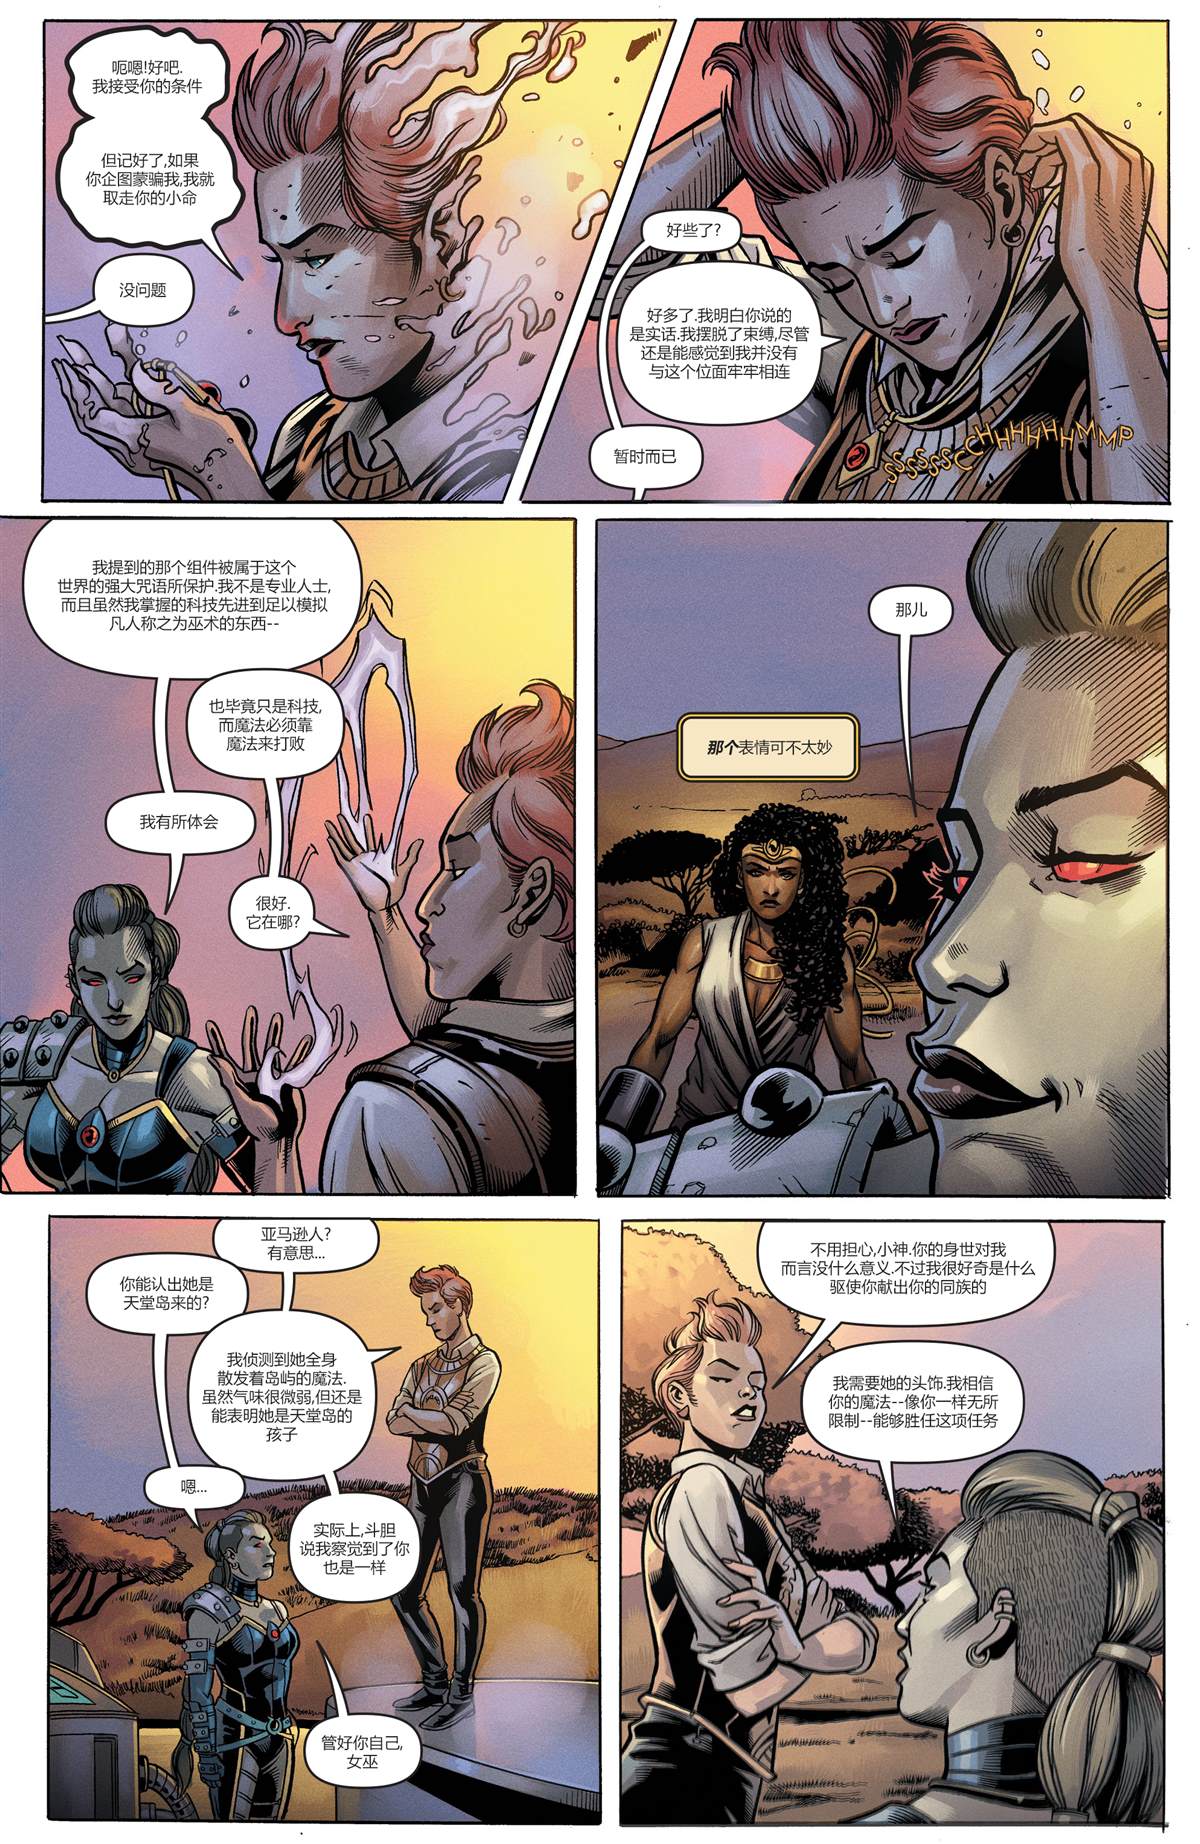 DC未來態 - 不朽神奇女俠#2 - 7